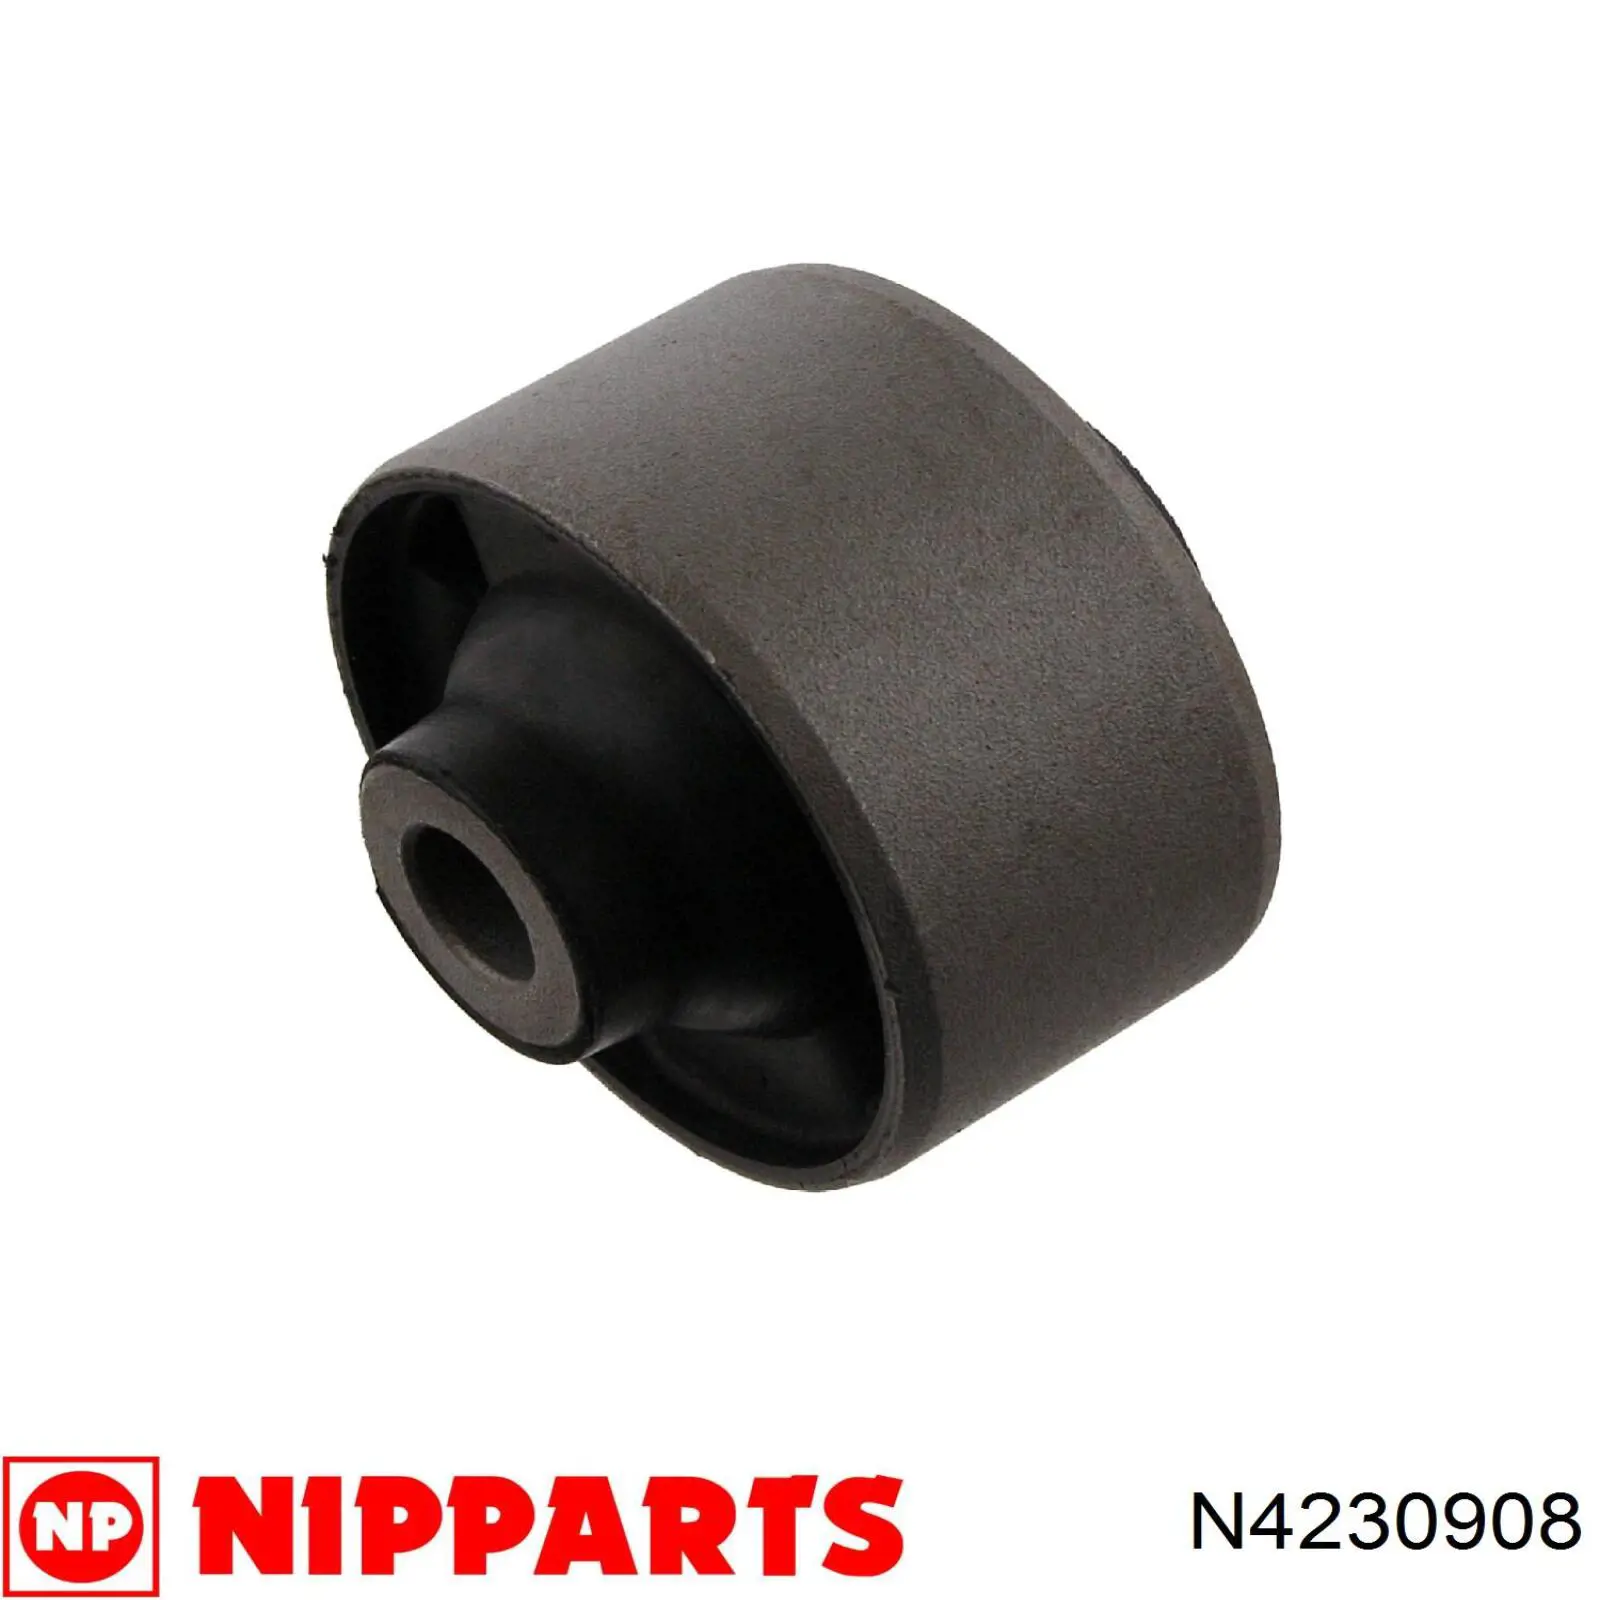 N4230908 Nipparts silentblock de suspensión delantero inferior